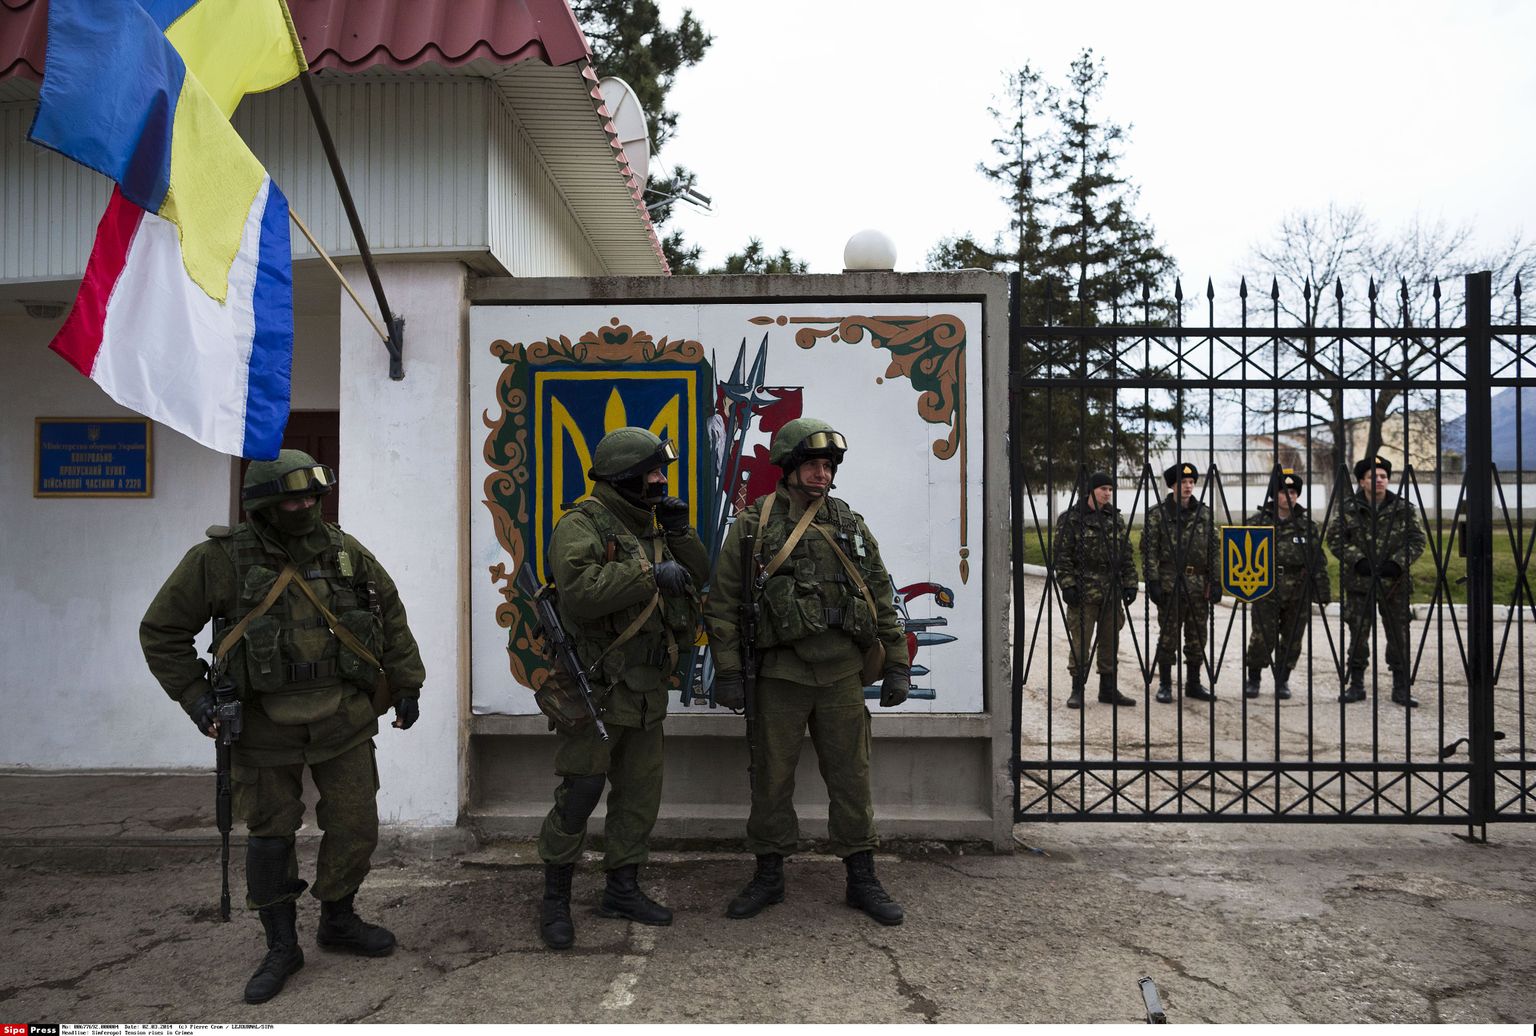 Vene sõdurid Ukraina sõjaväebaasi väravate juures Simferopolis.